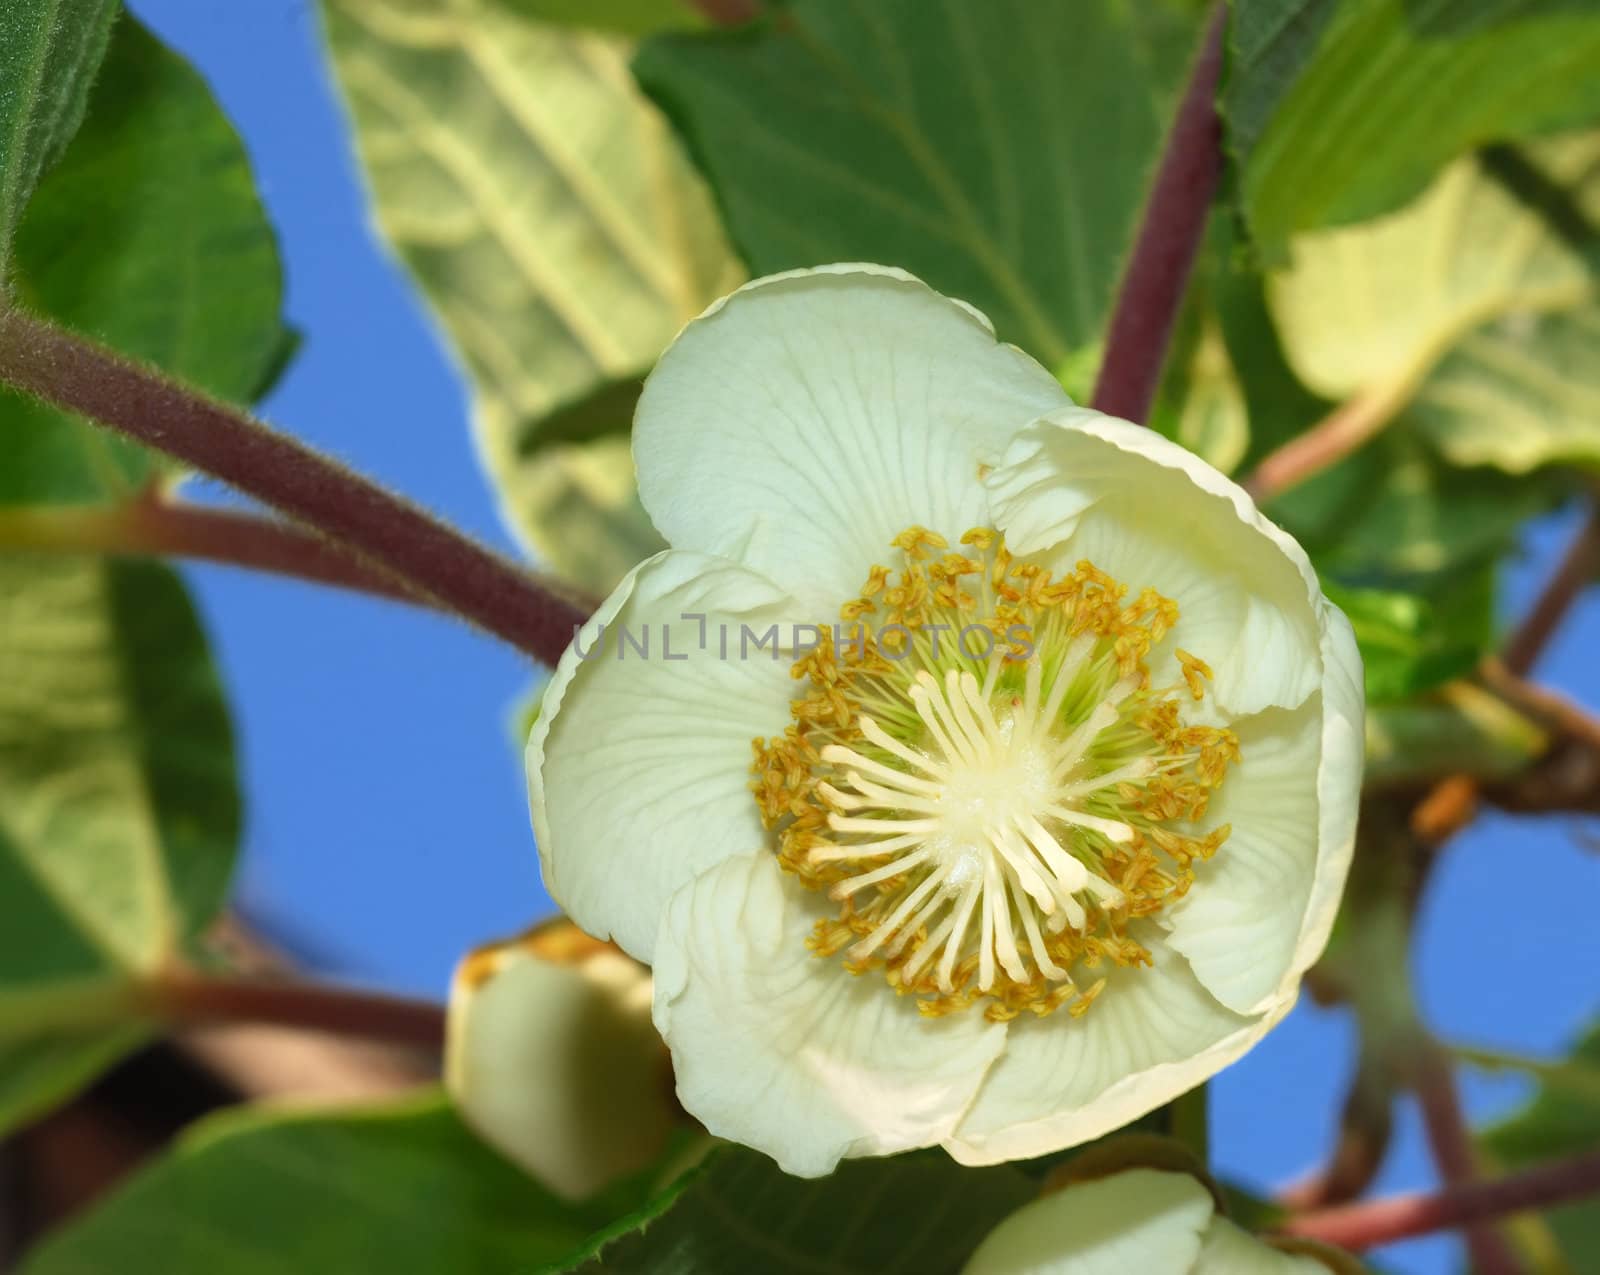 Kiwifruit female flower by whitechild